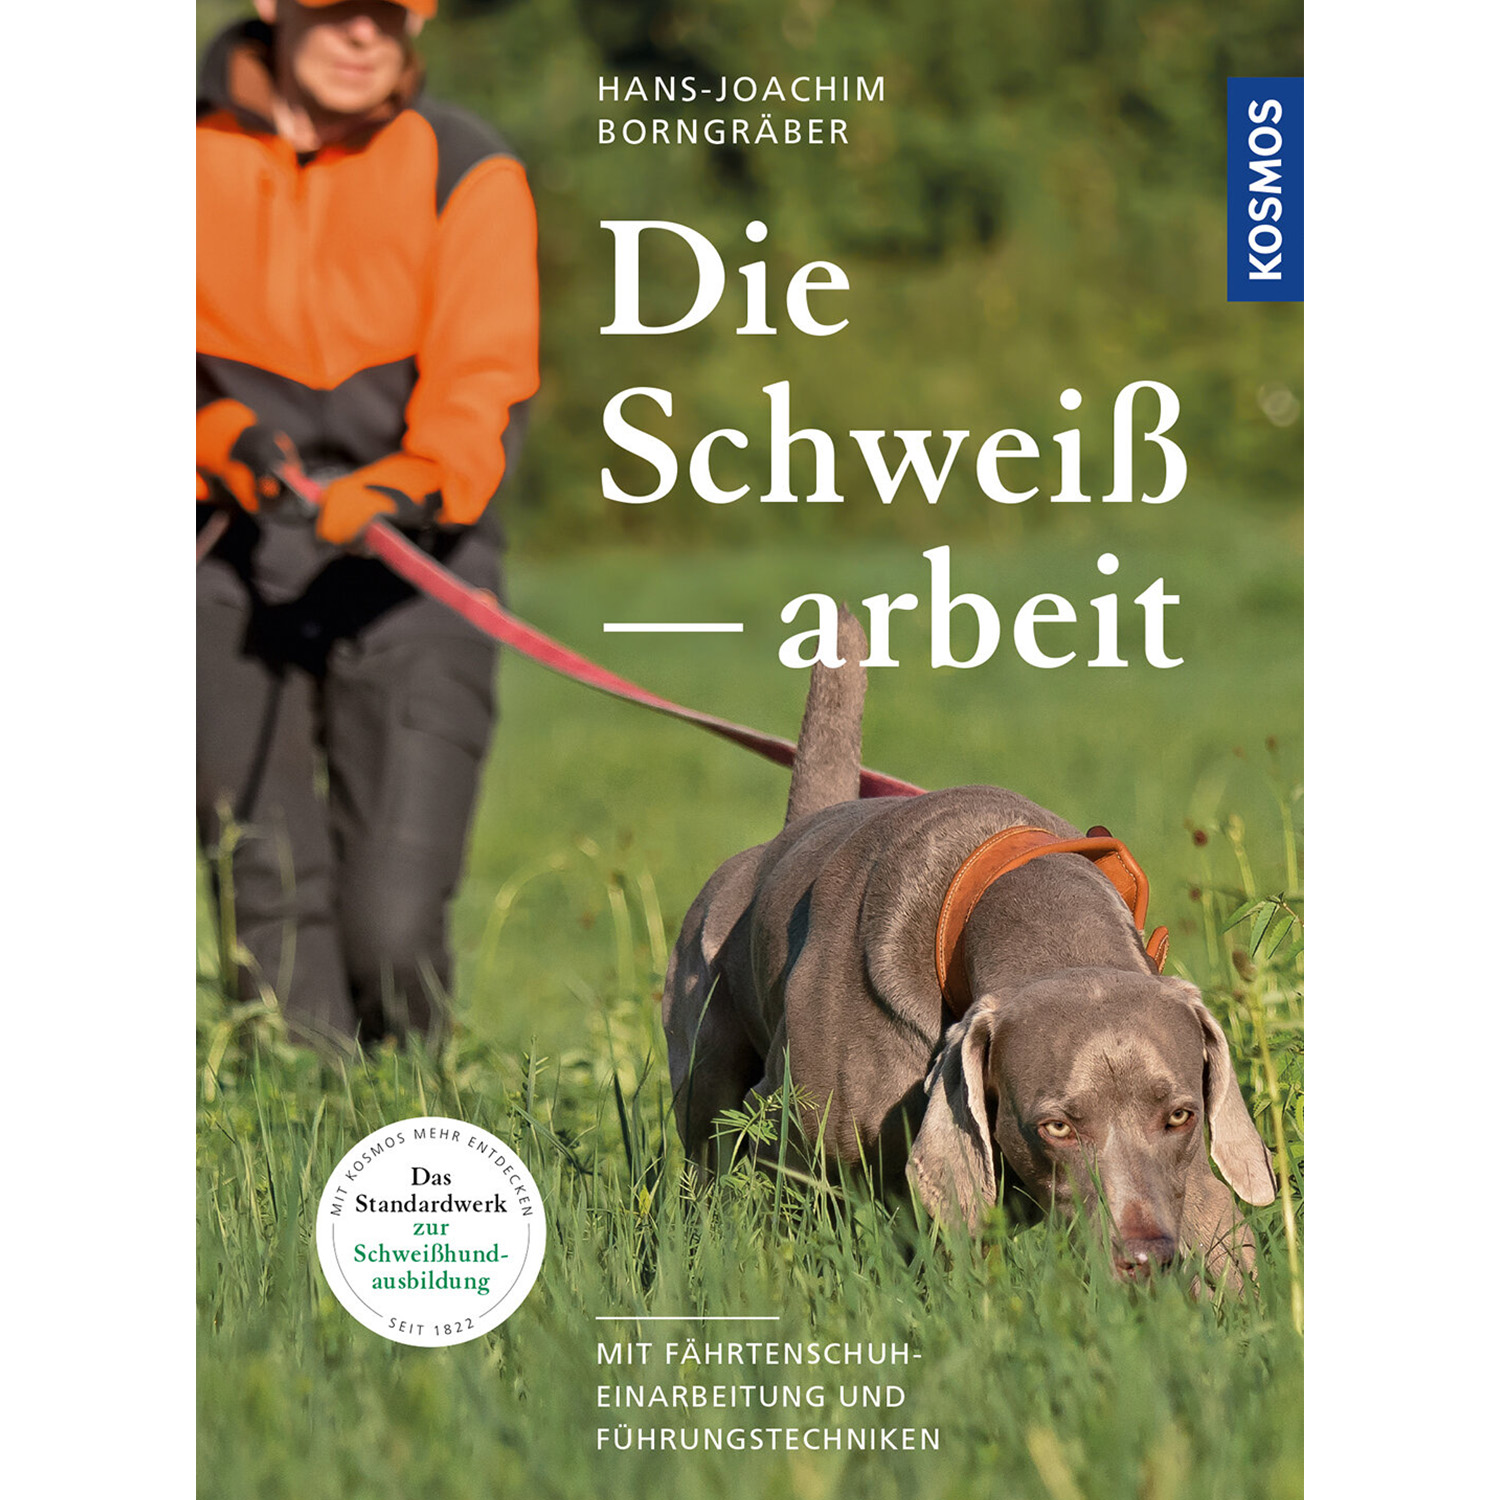 Die Schweißarbeit - Buch - Hans-Joachim Borngräber - Jagdbücher